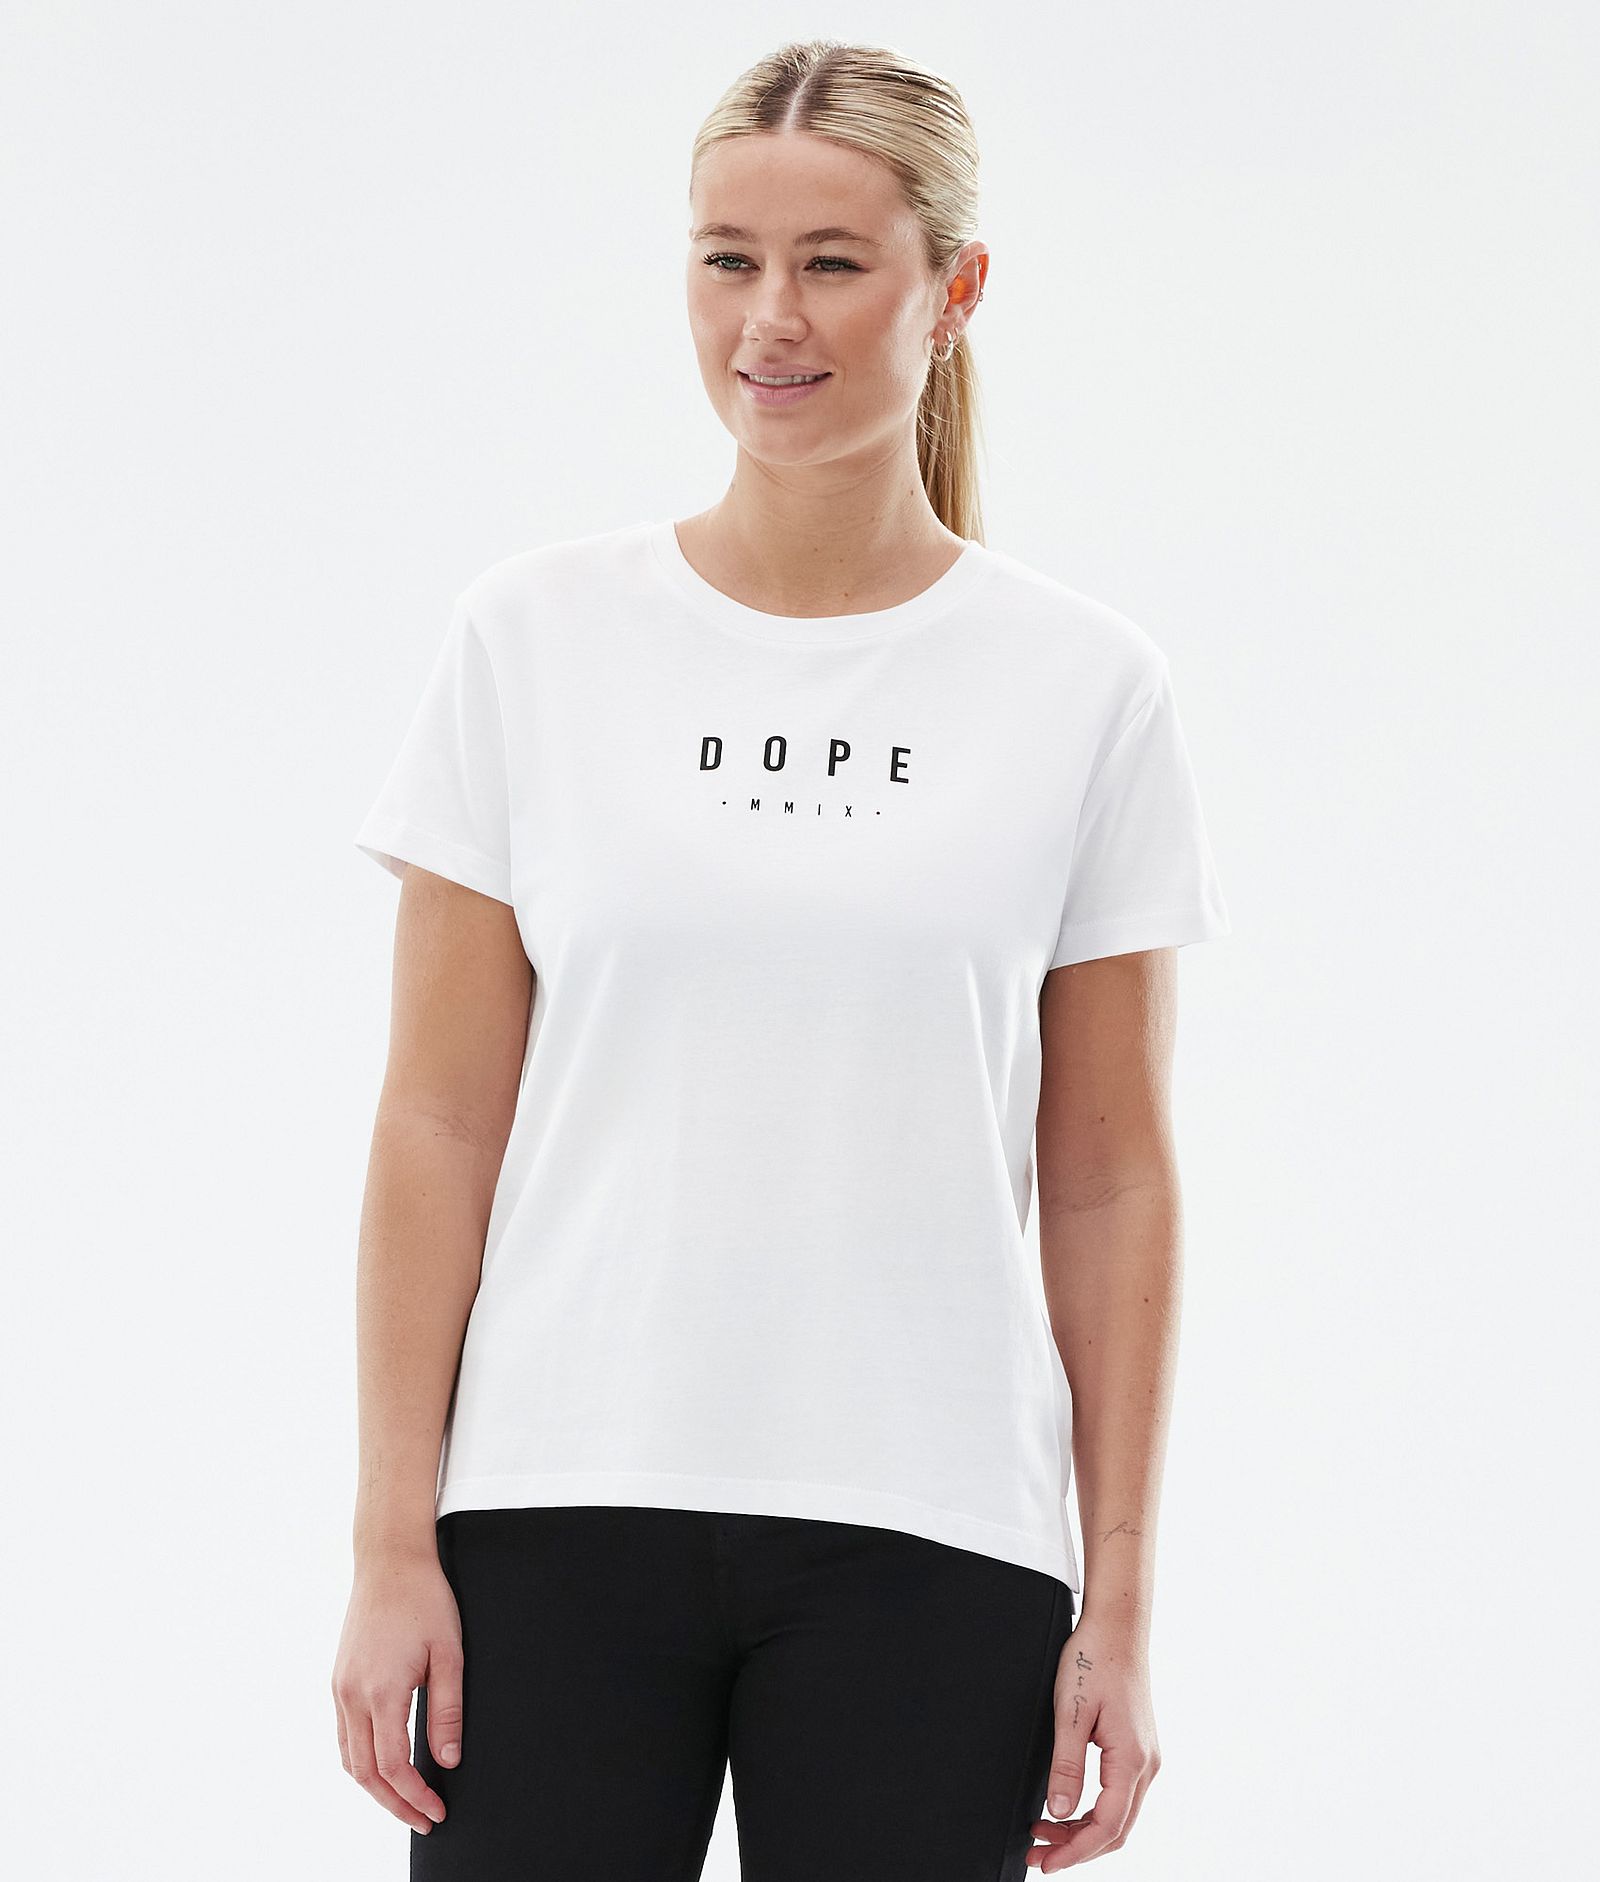 Standard W T-shirt Women Aphex White